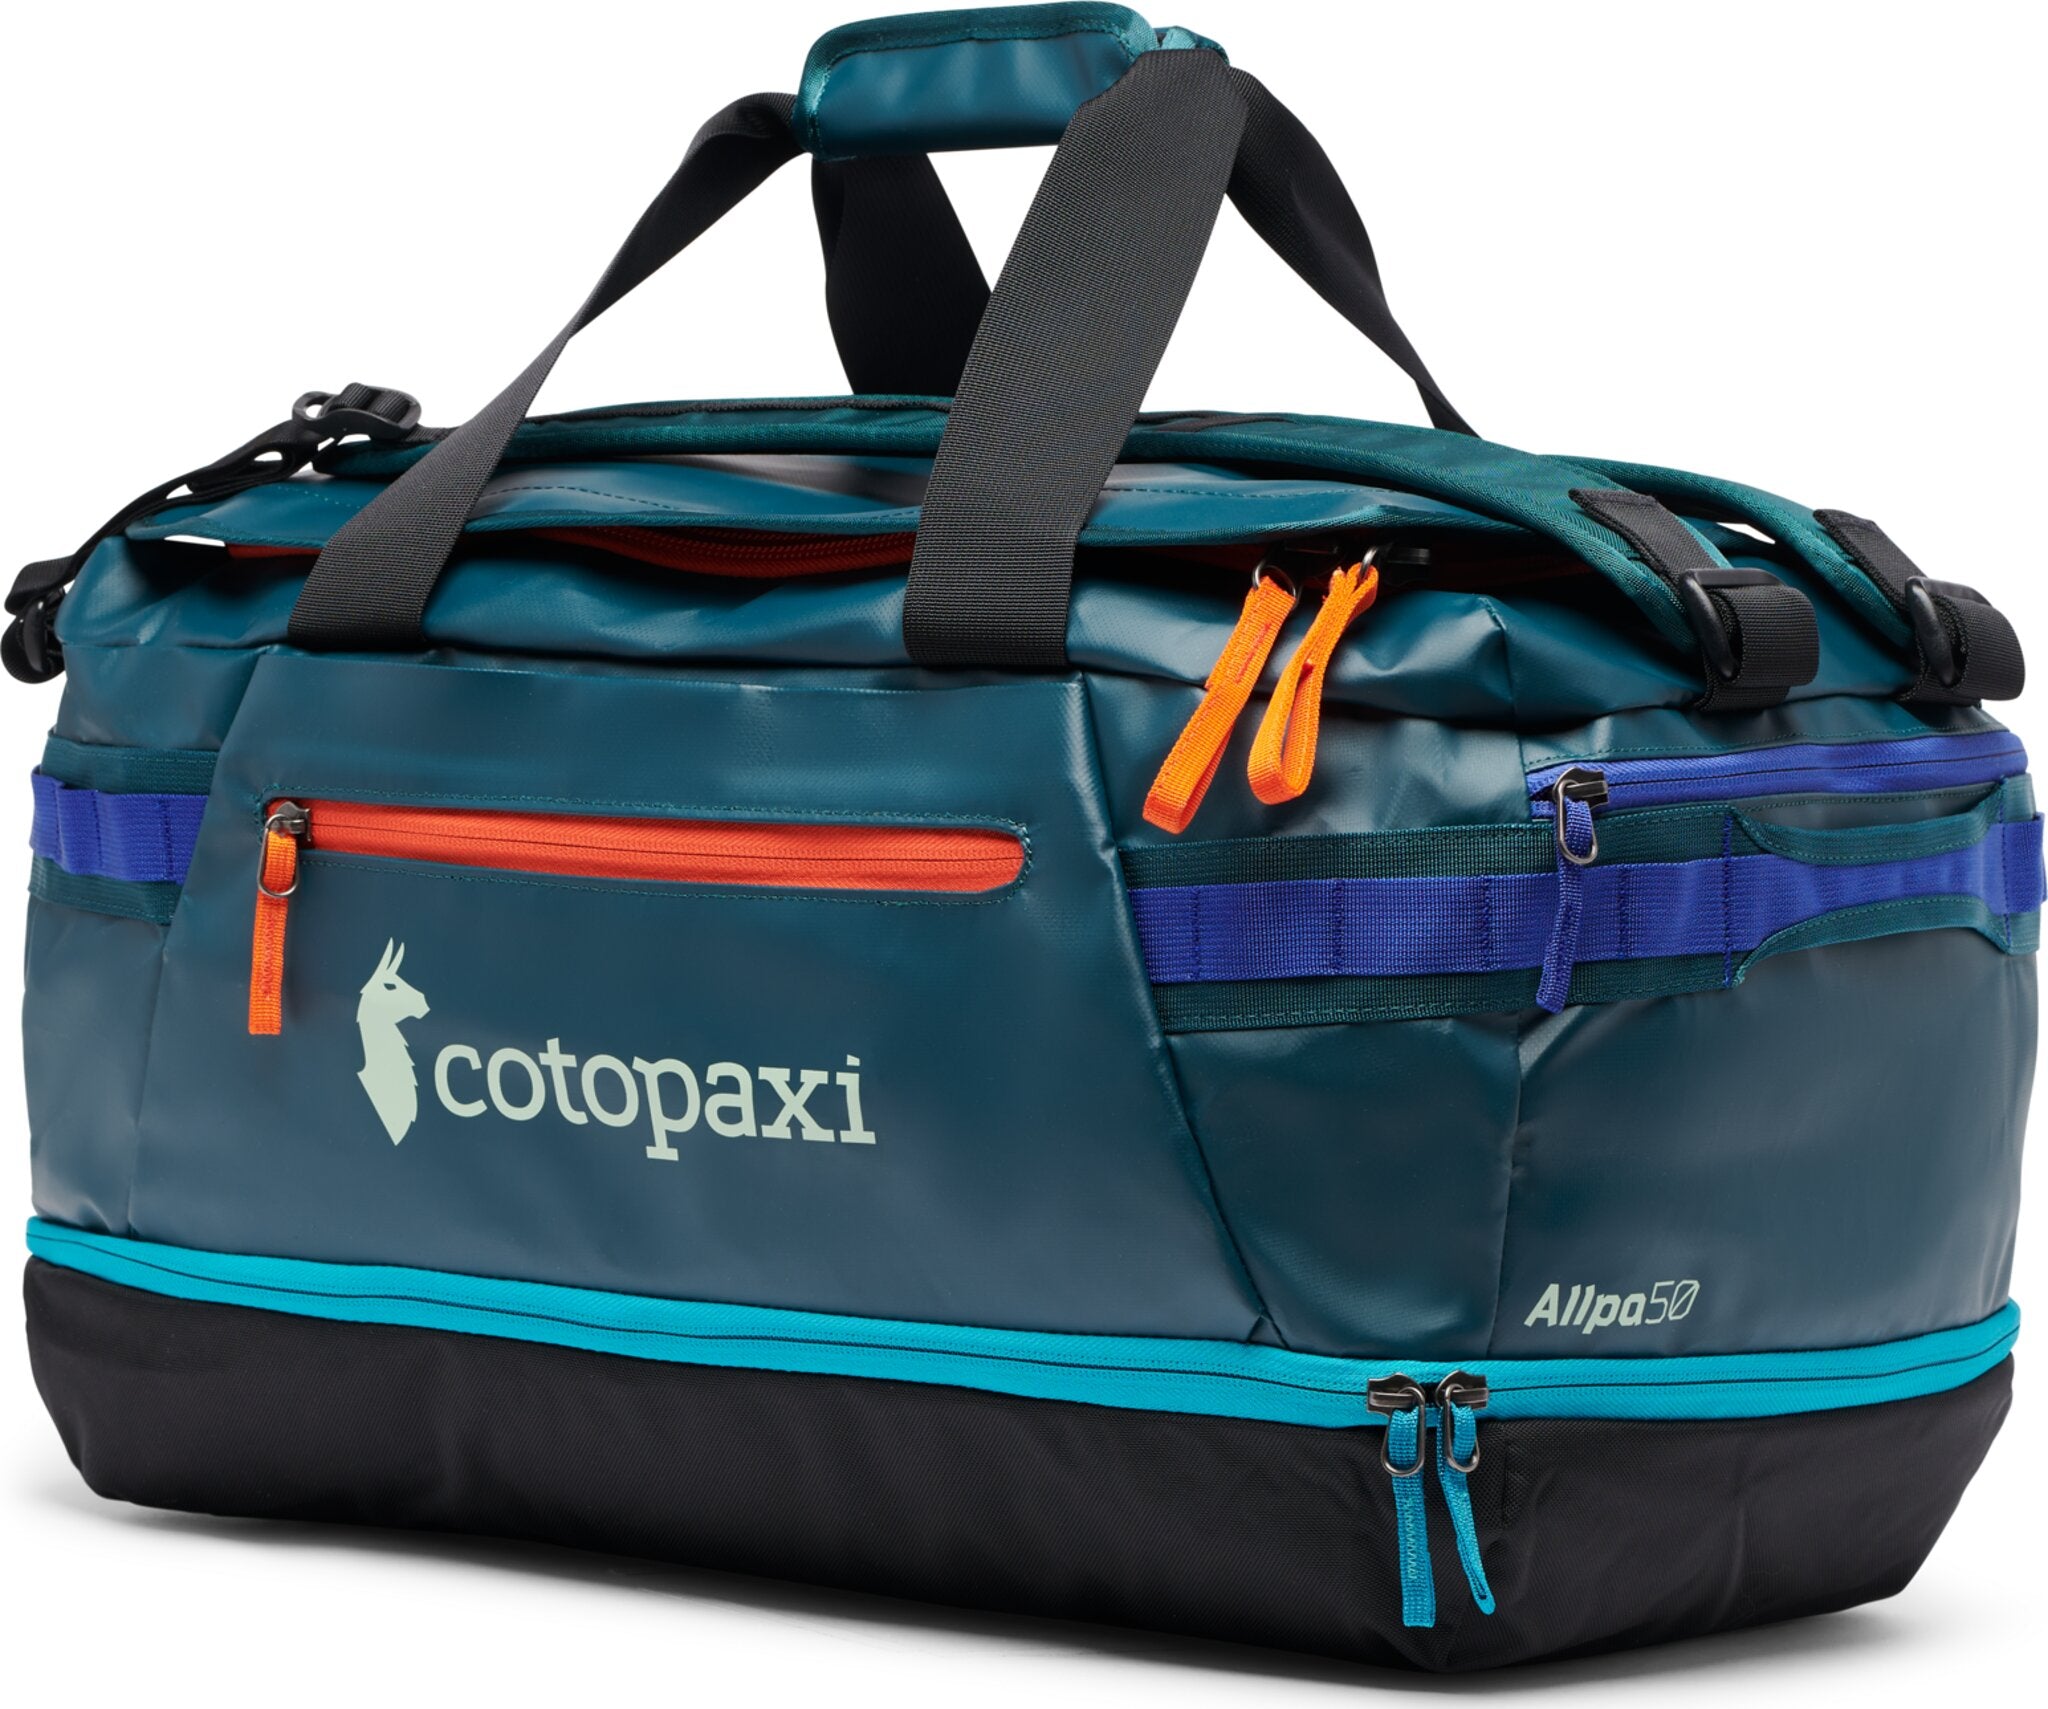 Cotopaxi Allpa Duffel Bag - 50L | Altitude Sports